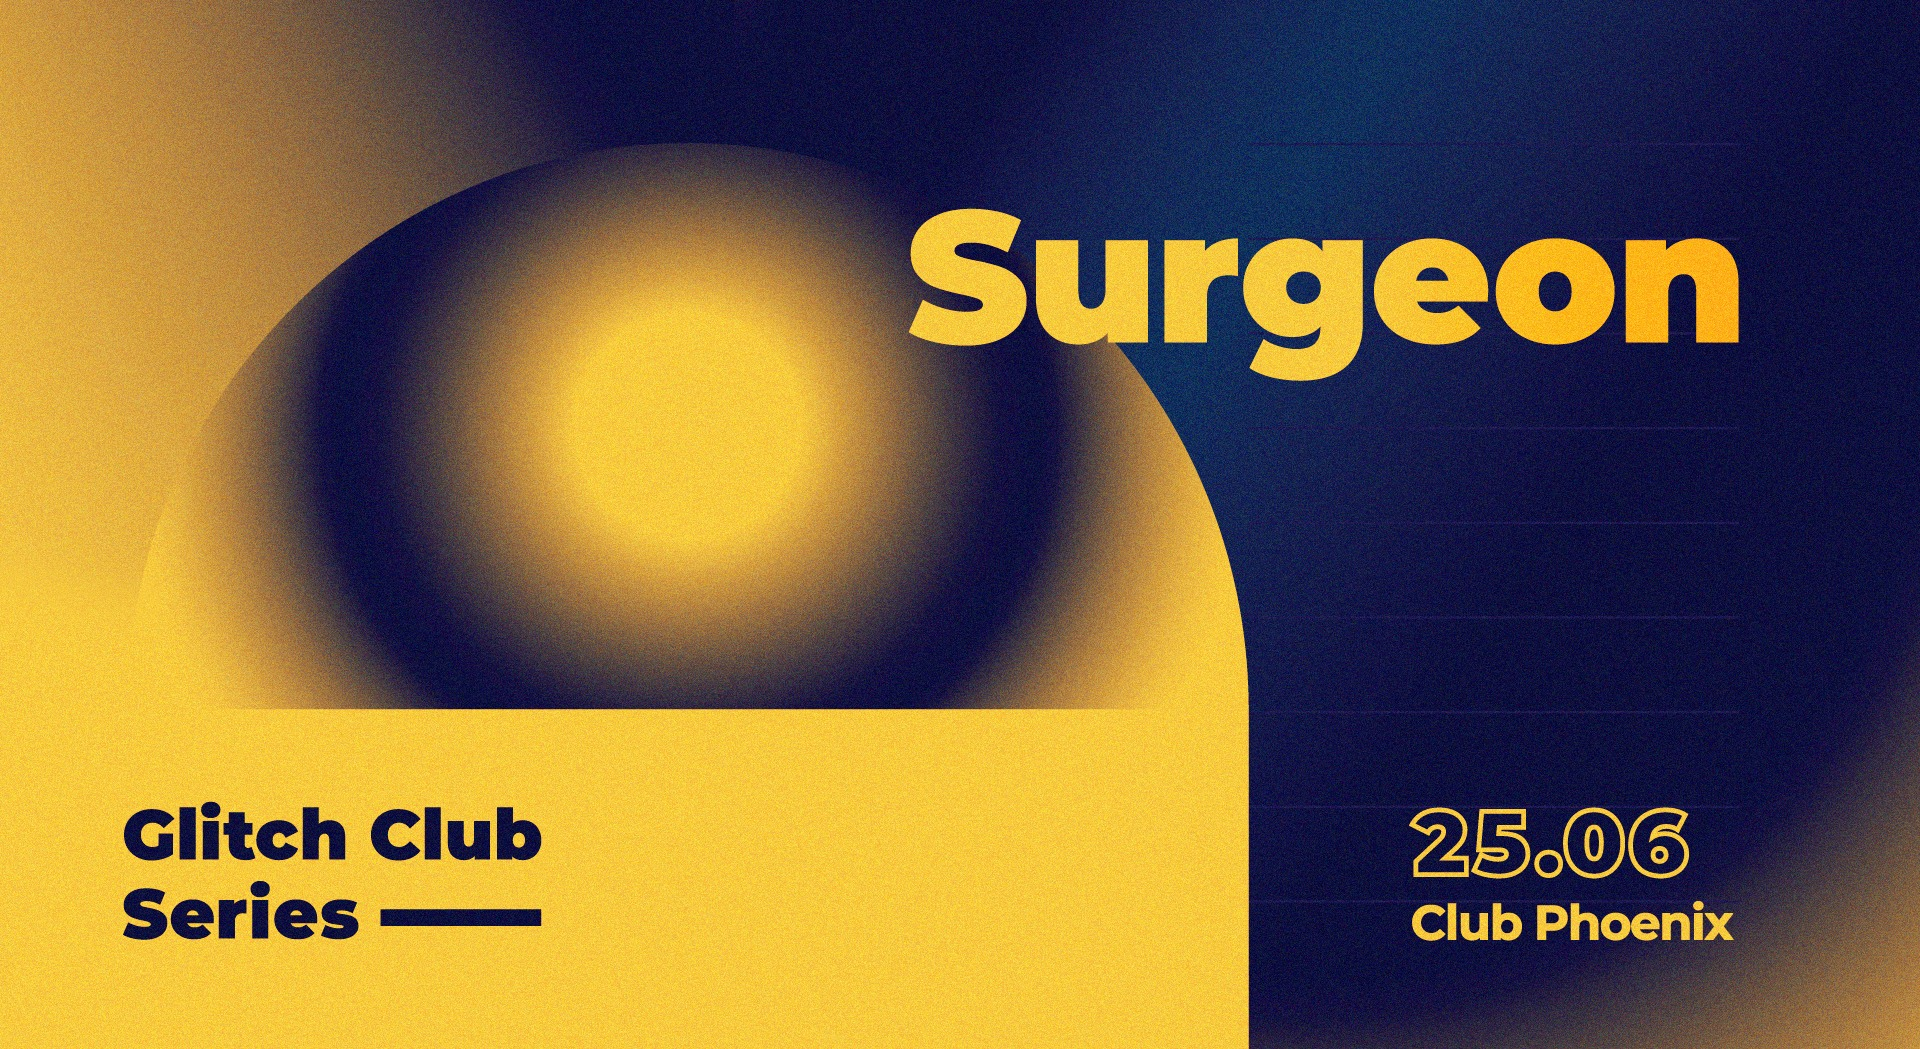 Glitch Club Series: Surgeon - Flyer front